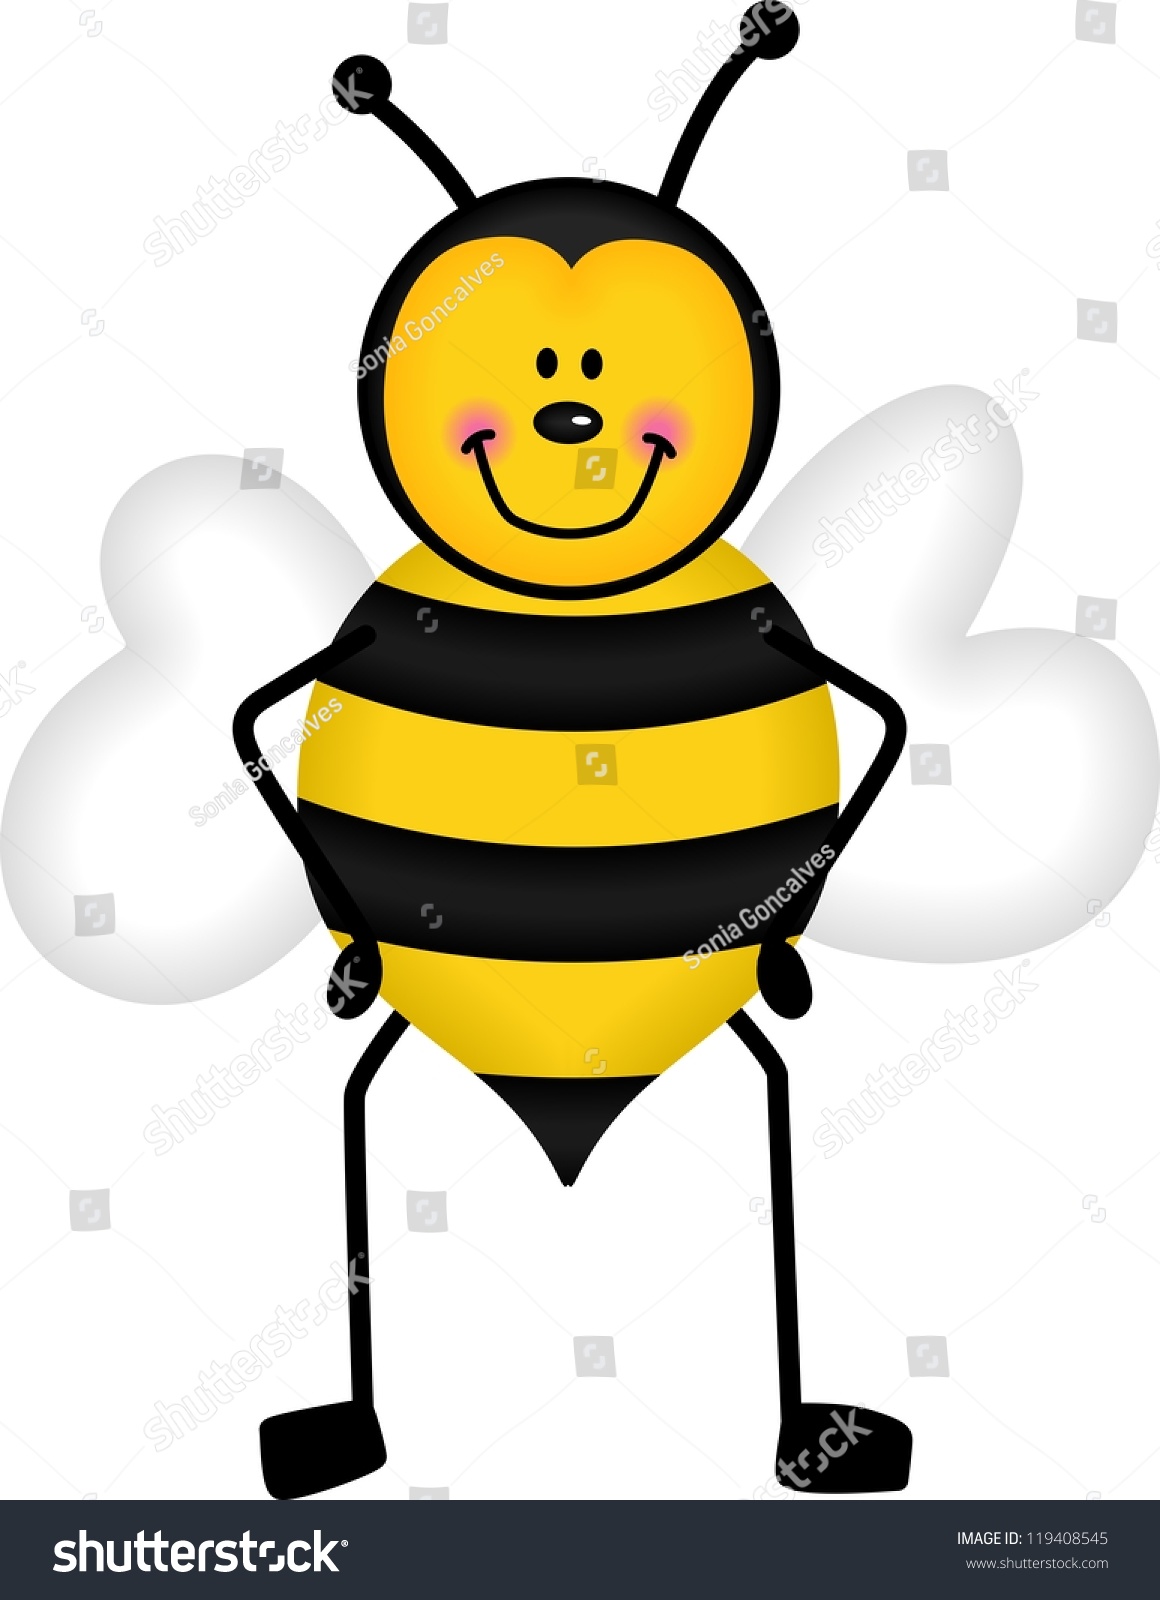 Cute Honey Bee Stock Vector 119408545 - Shutterstock
